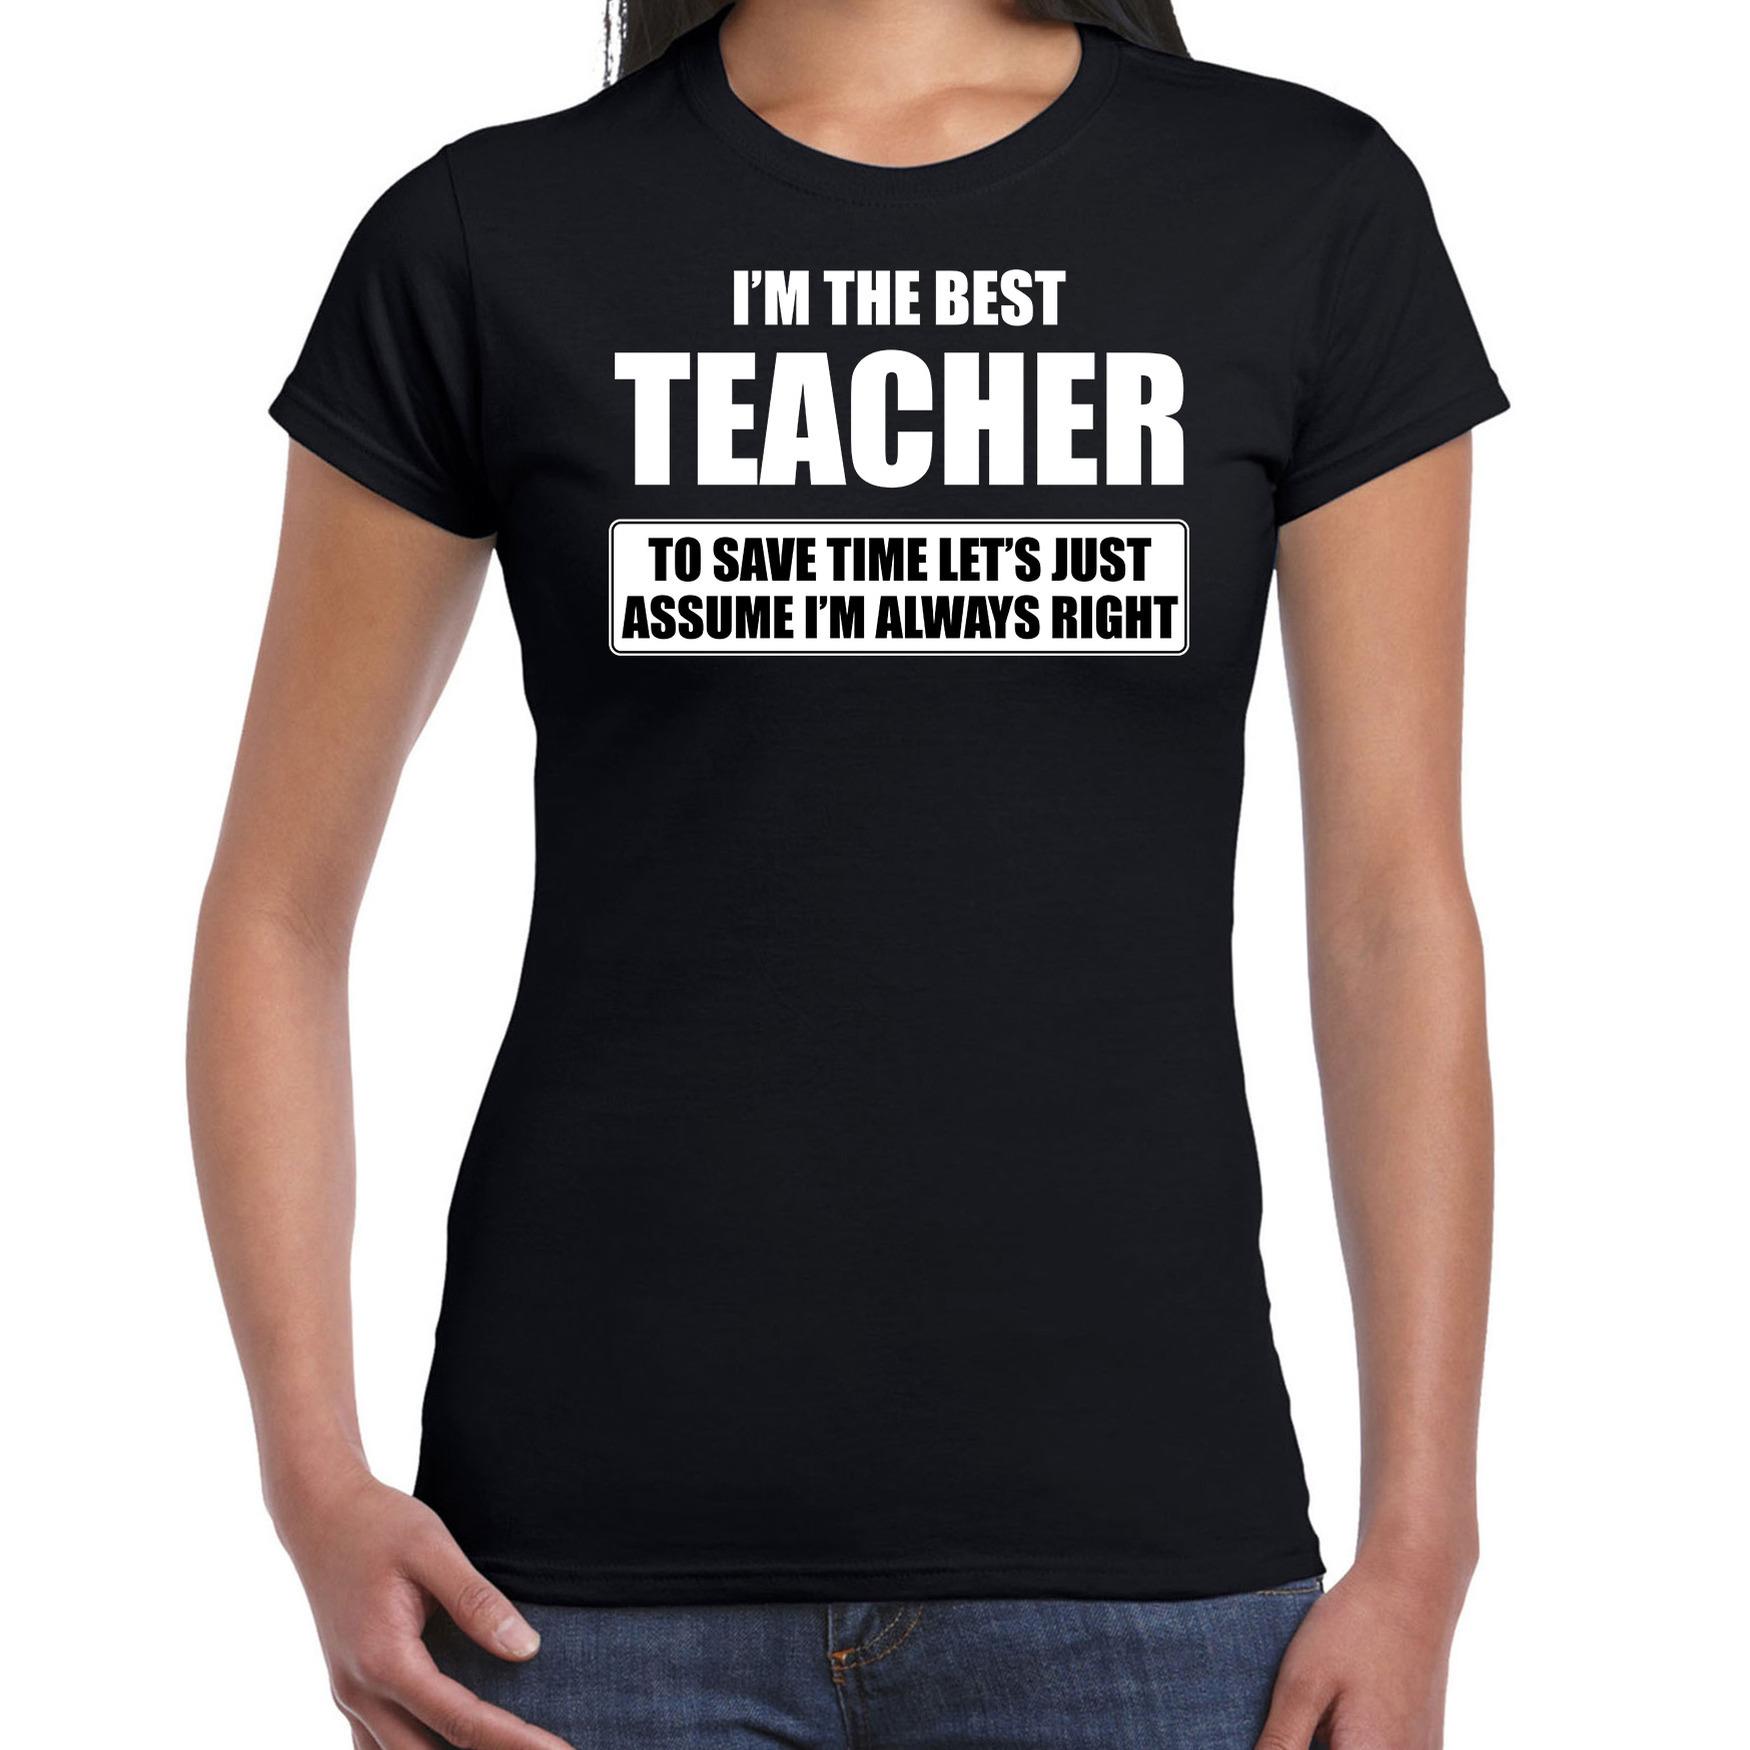 I'm the best teacher t-shirt zwart dames - De beste juf cadeau